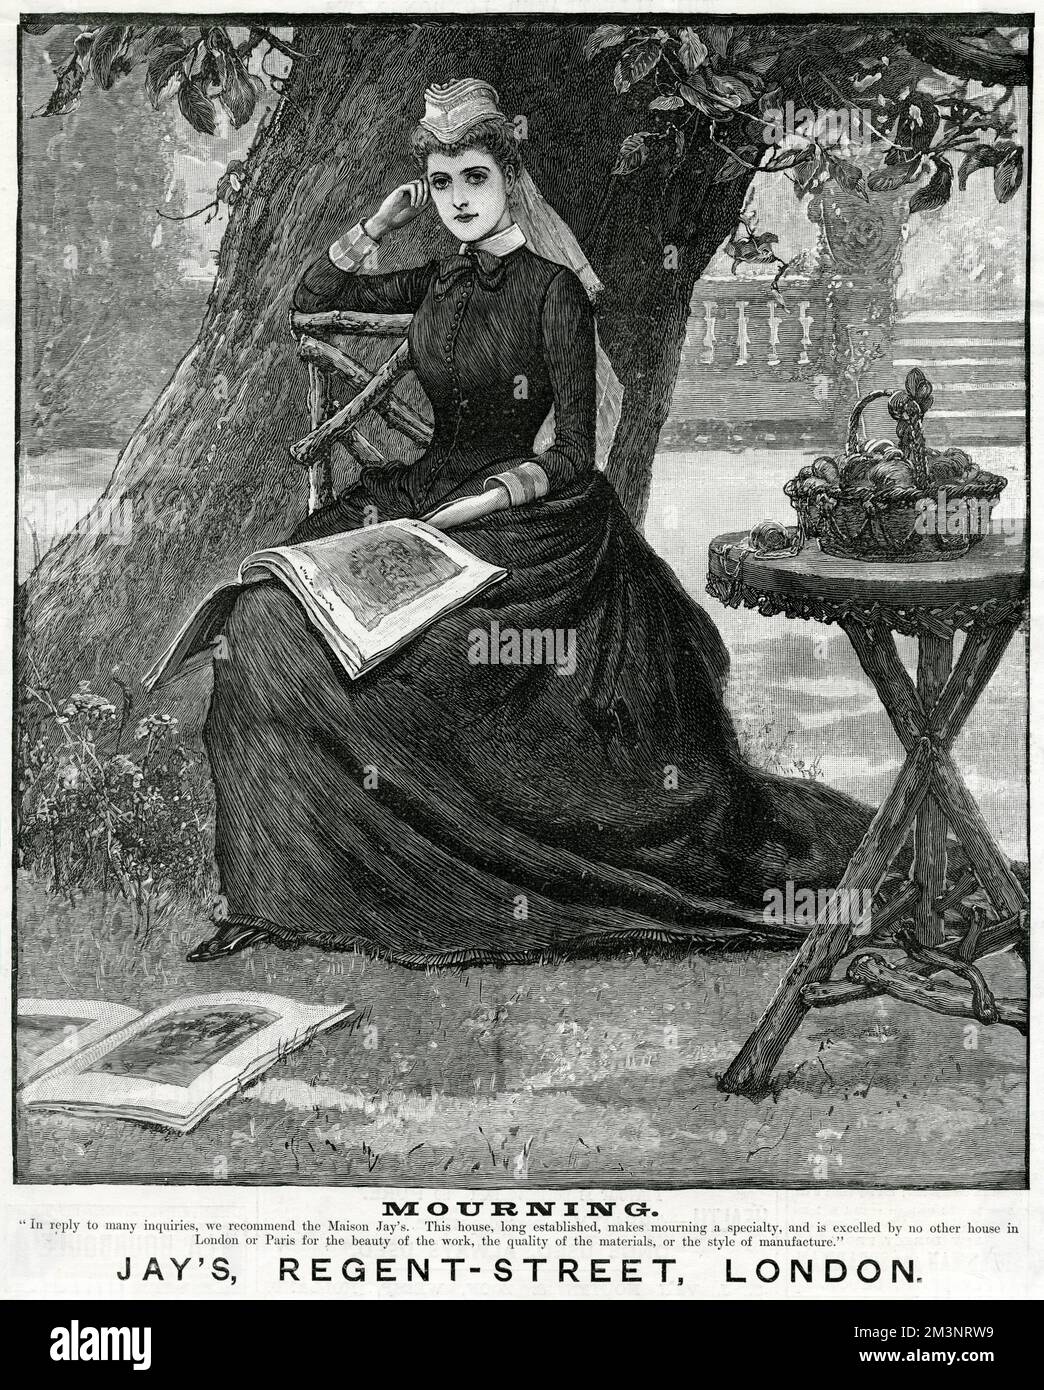 Eine nachdenkliche Frau sitzt unter einem Baum und modelt Trauerkleidung von Jay's of London. Ihr Arbeitskorb steht auf einem rustikalen Tisch, und illustrierte Zeitschriften liegen zu ihren Füßen. Datum: 1888 Stockfoto